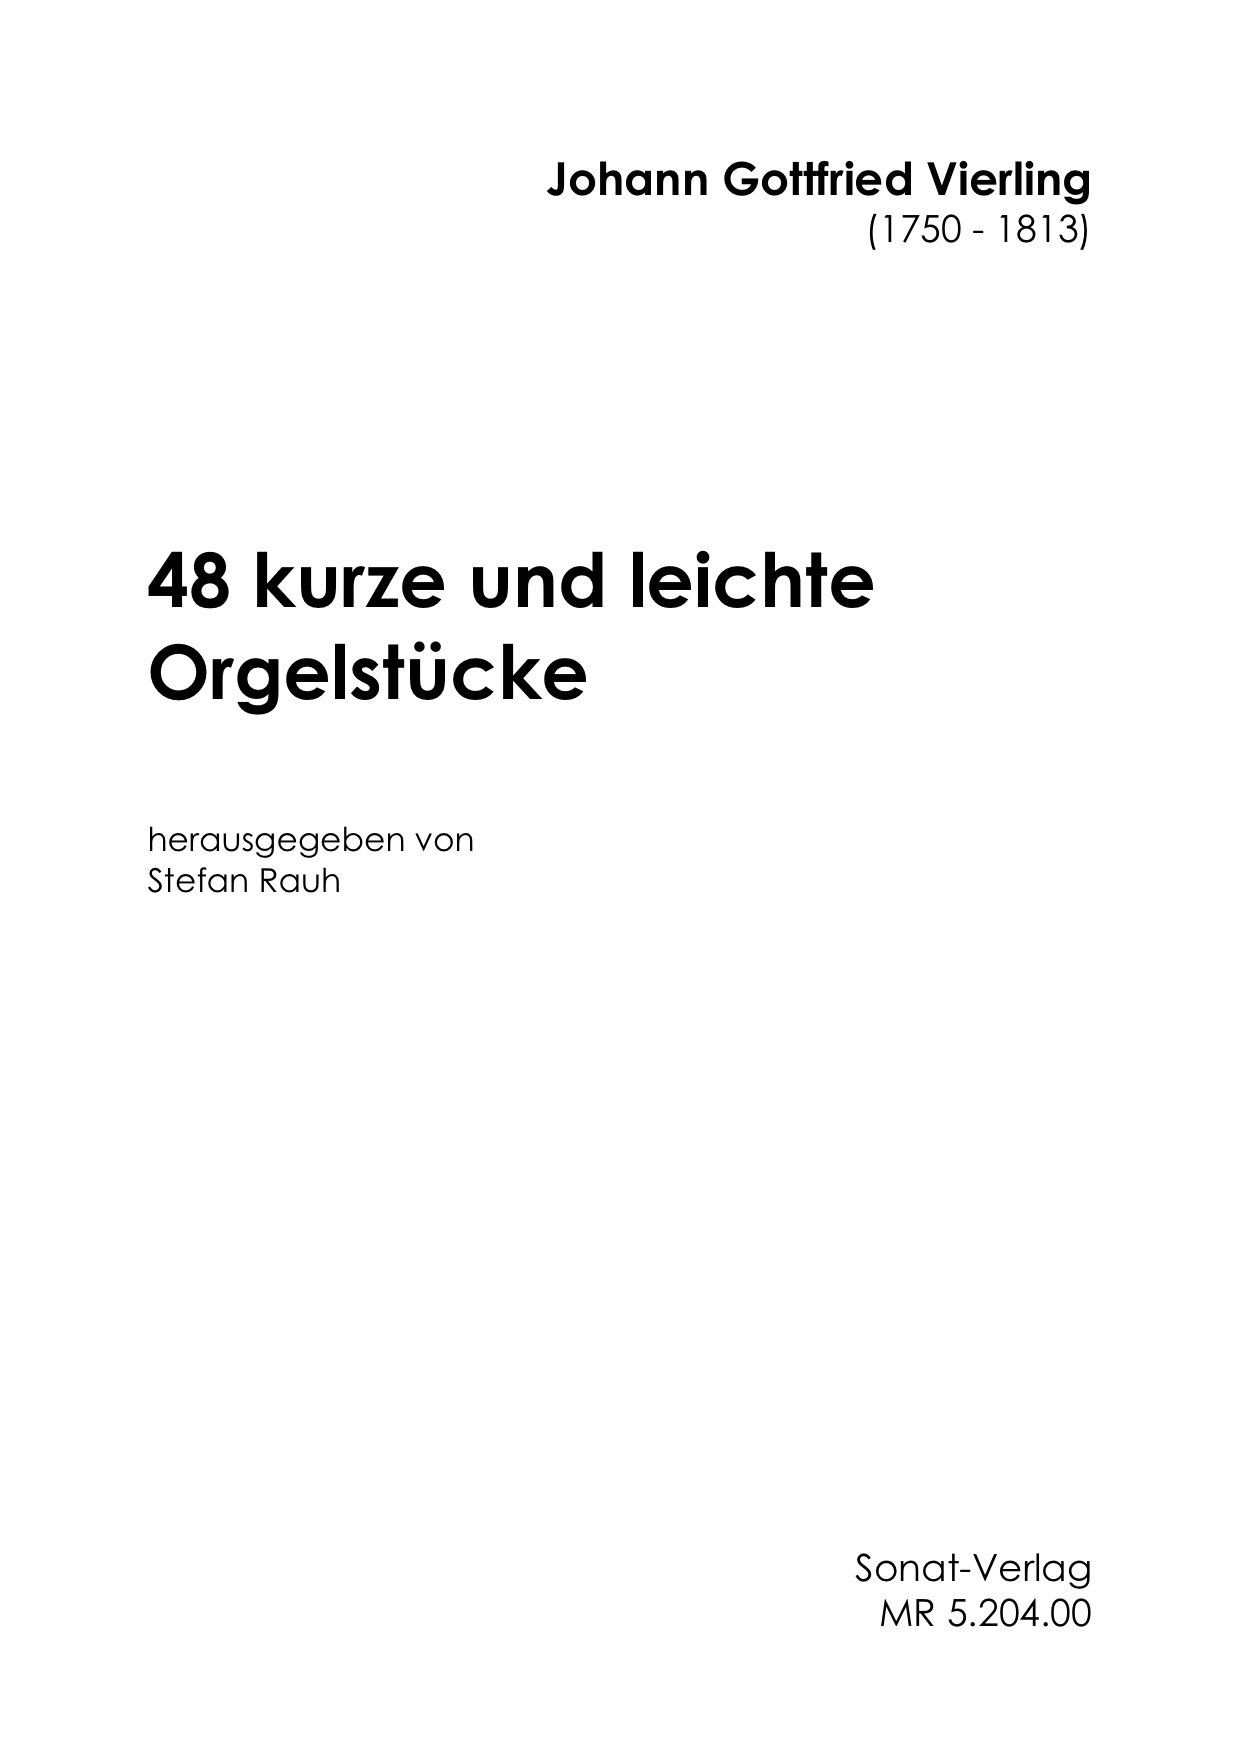 48 leichte Orgelstücke